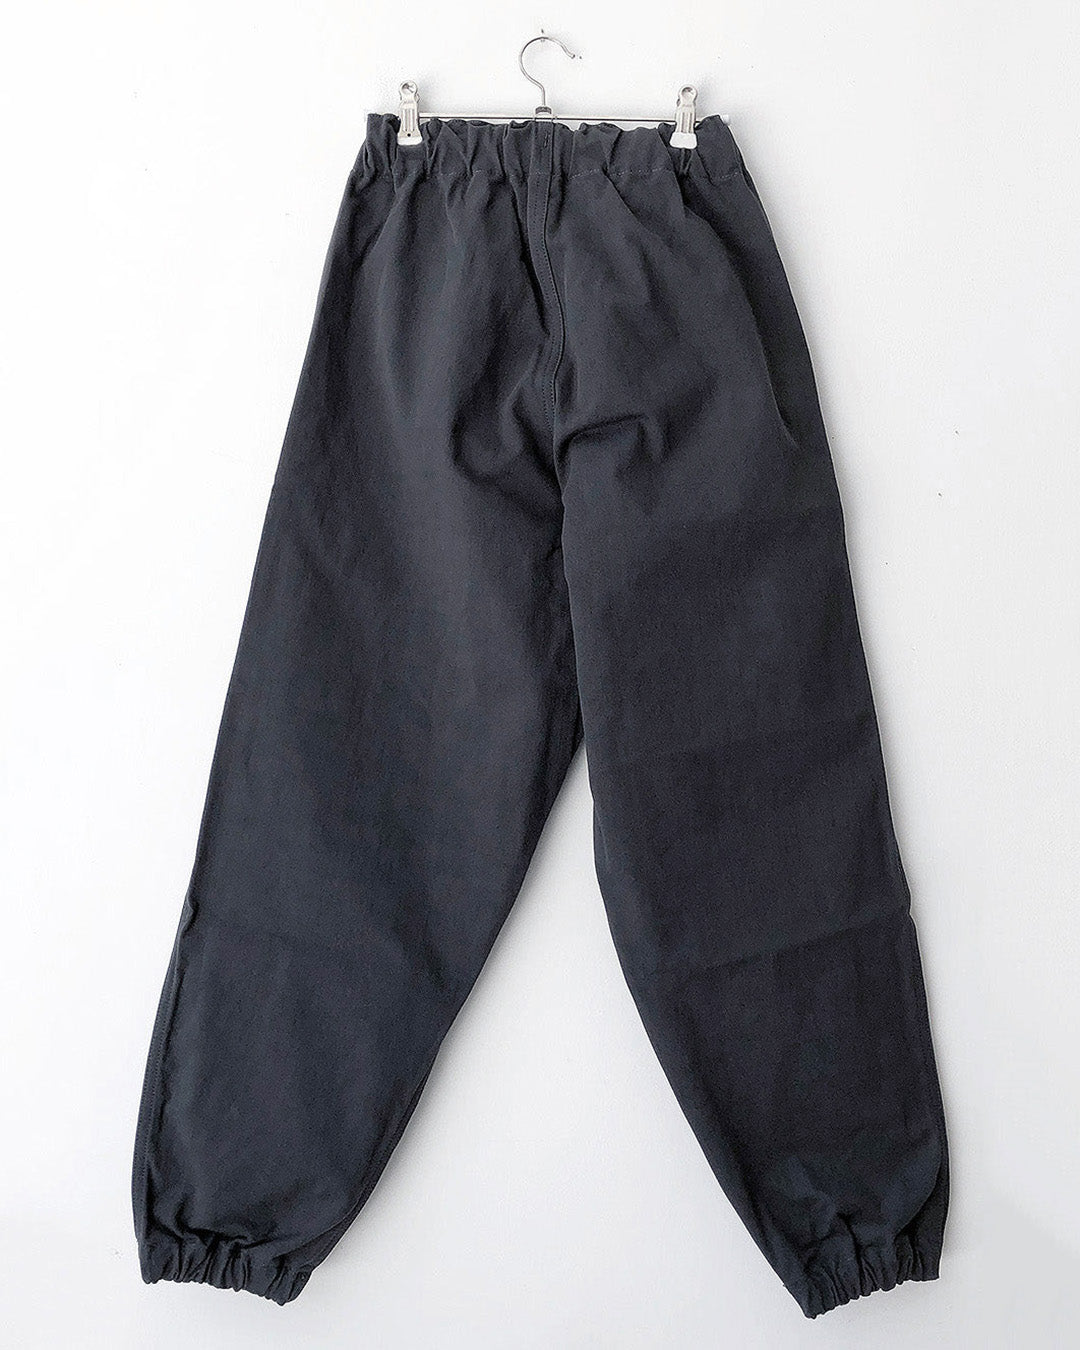 TUKI gum pants / steel blue / solid twill / size0,2